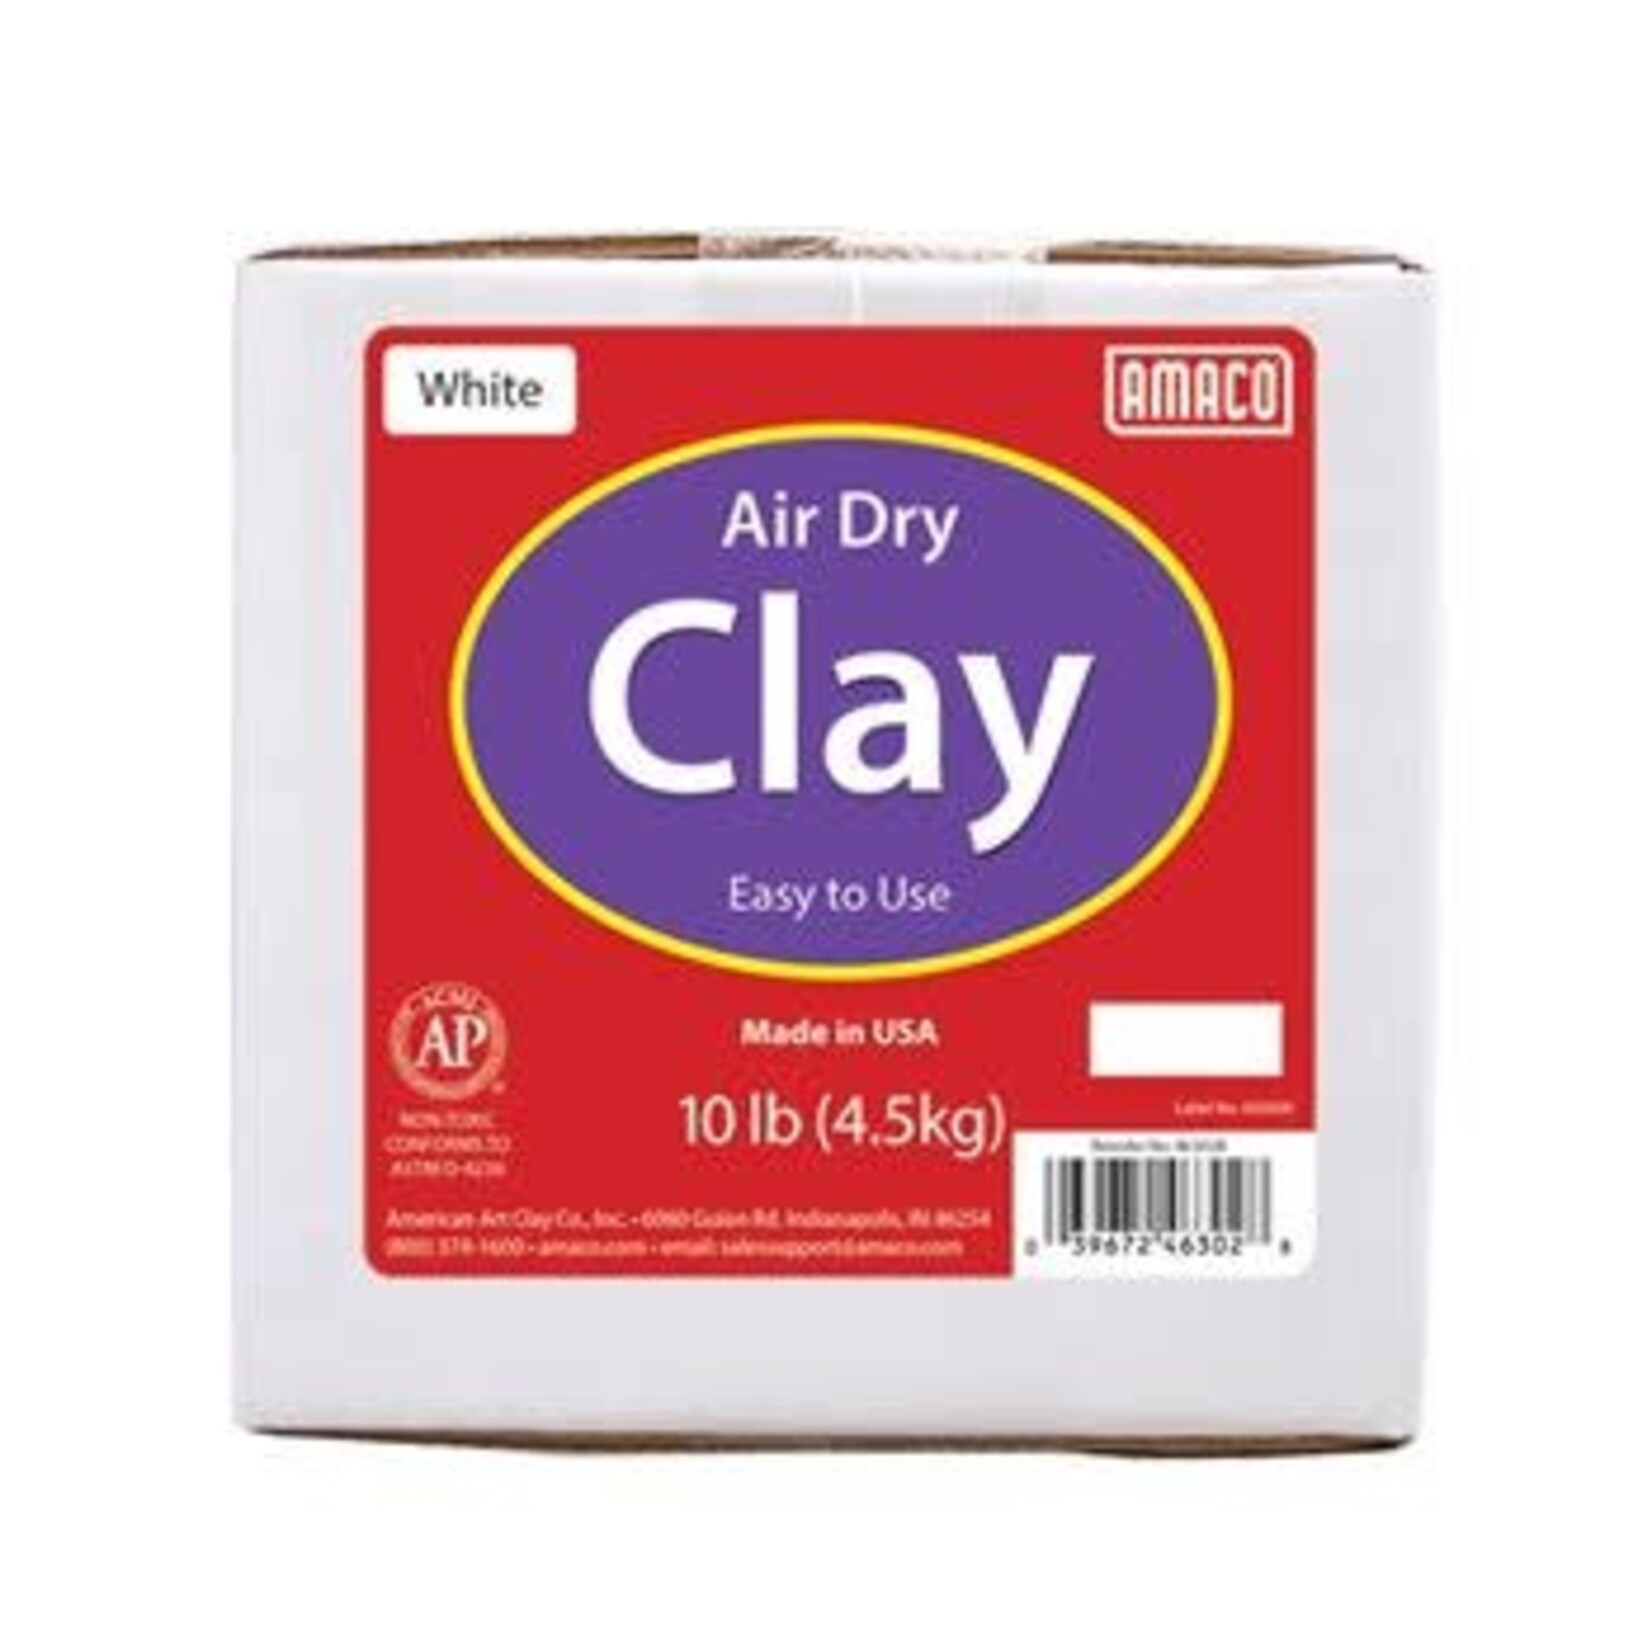 Amaco Clay Air Dry White 10Lb